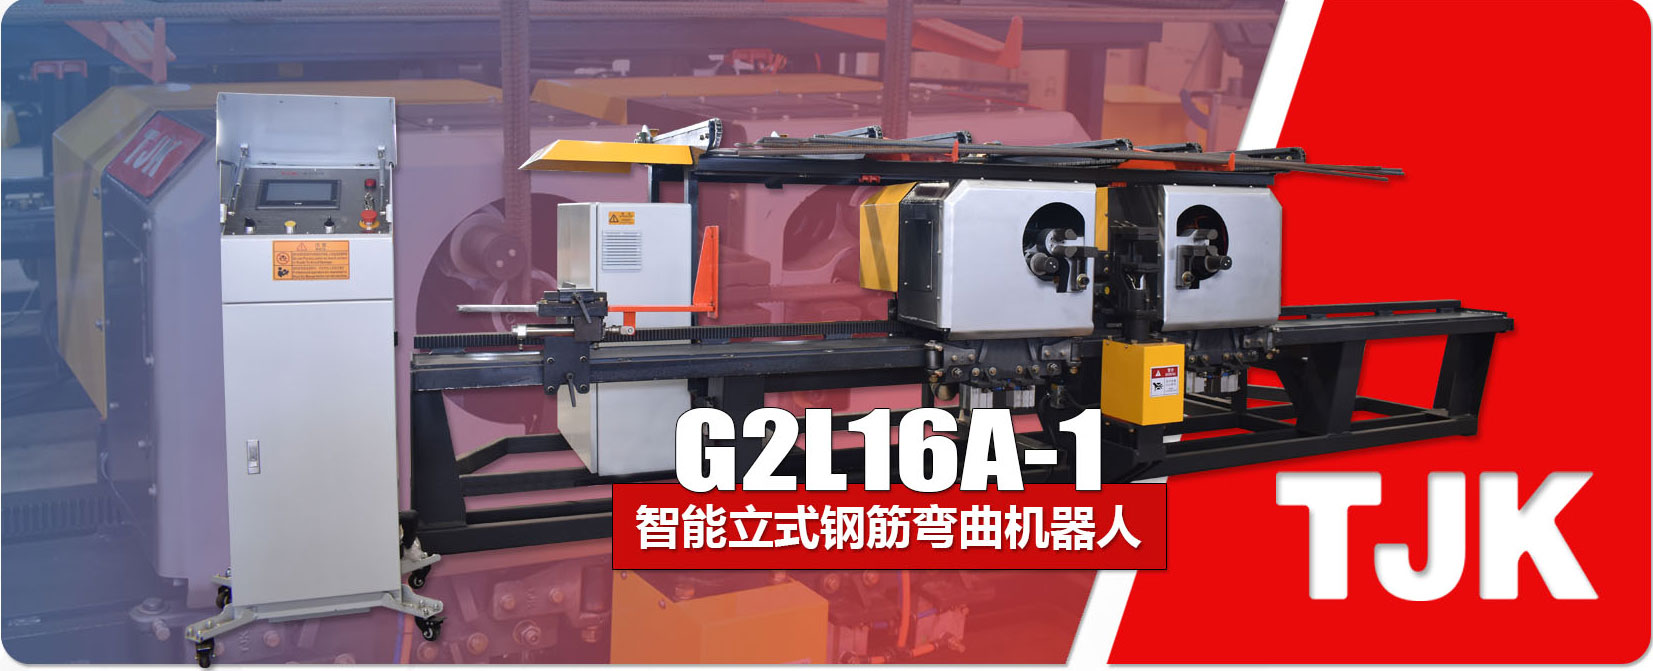 G2L16A-1产品特点_05.jpg